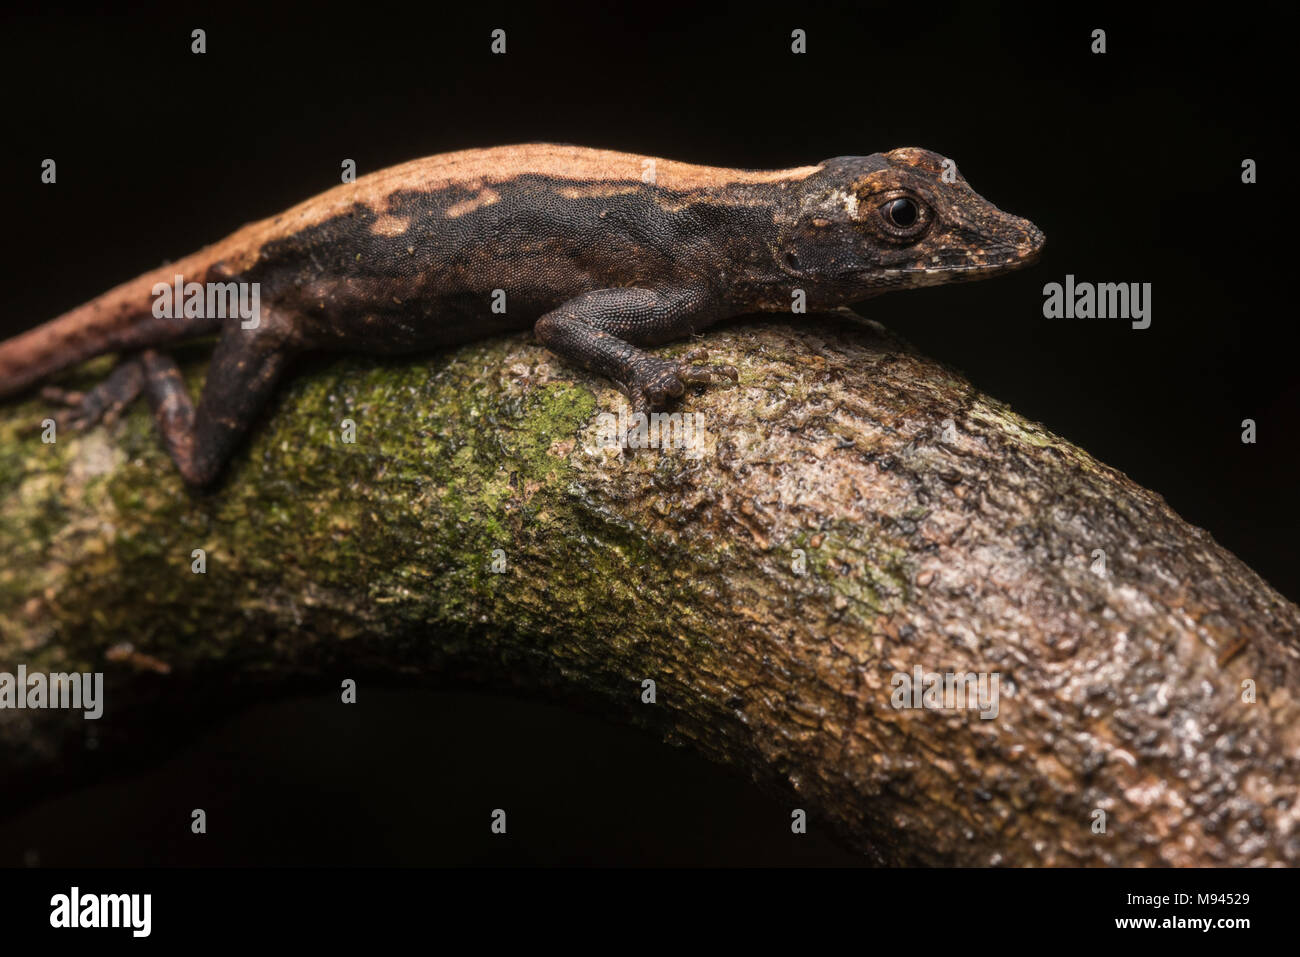 Ein Wald anole Aus dem peruanischen Regenwald. Diese Reptilien sind weit verbreitet in der Neotropis. Stockfoto